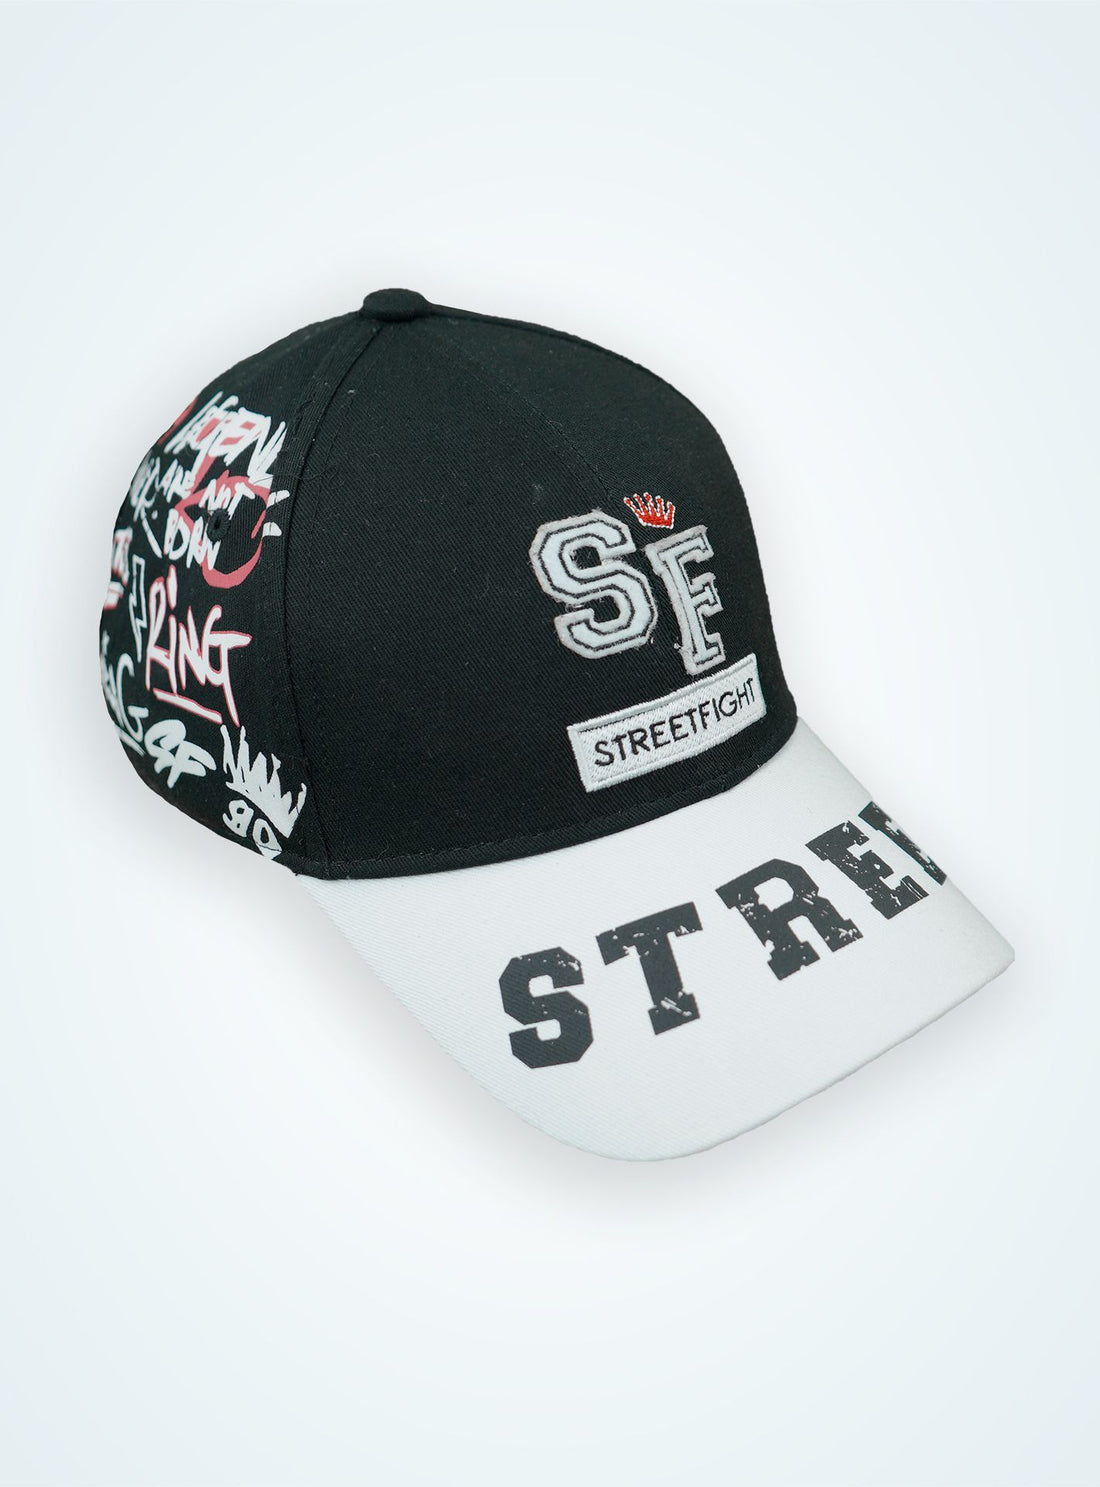 StreetFight cap « Winner » Black & White